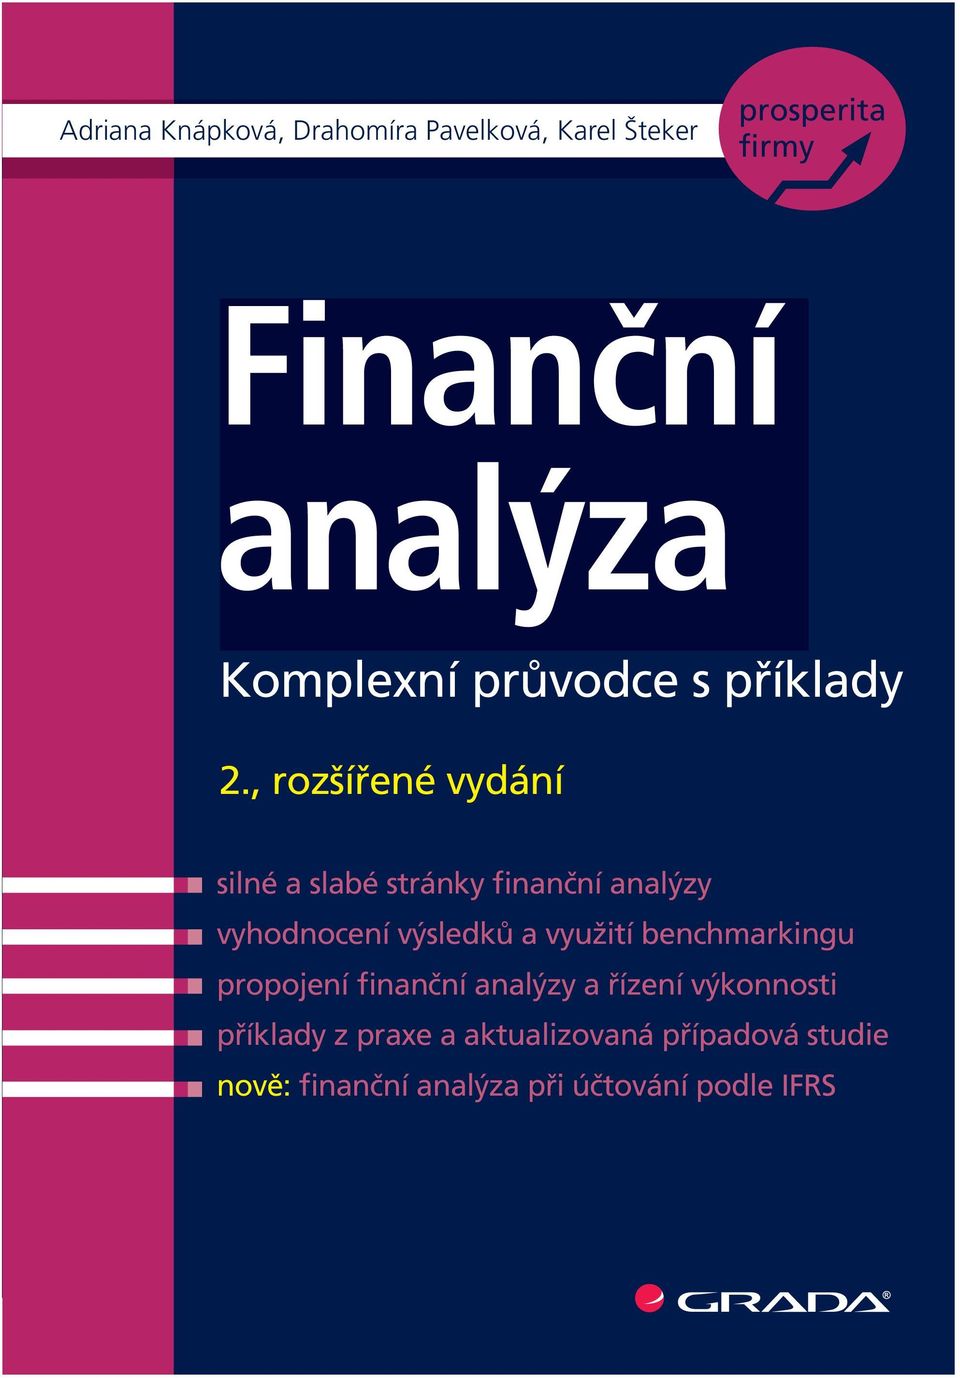 , rozšířené vydání silné a slabé stránky finanční analýzy vyhodnocení výsledků a využití